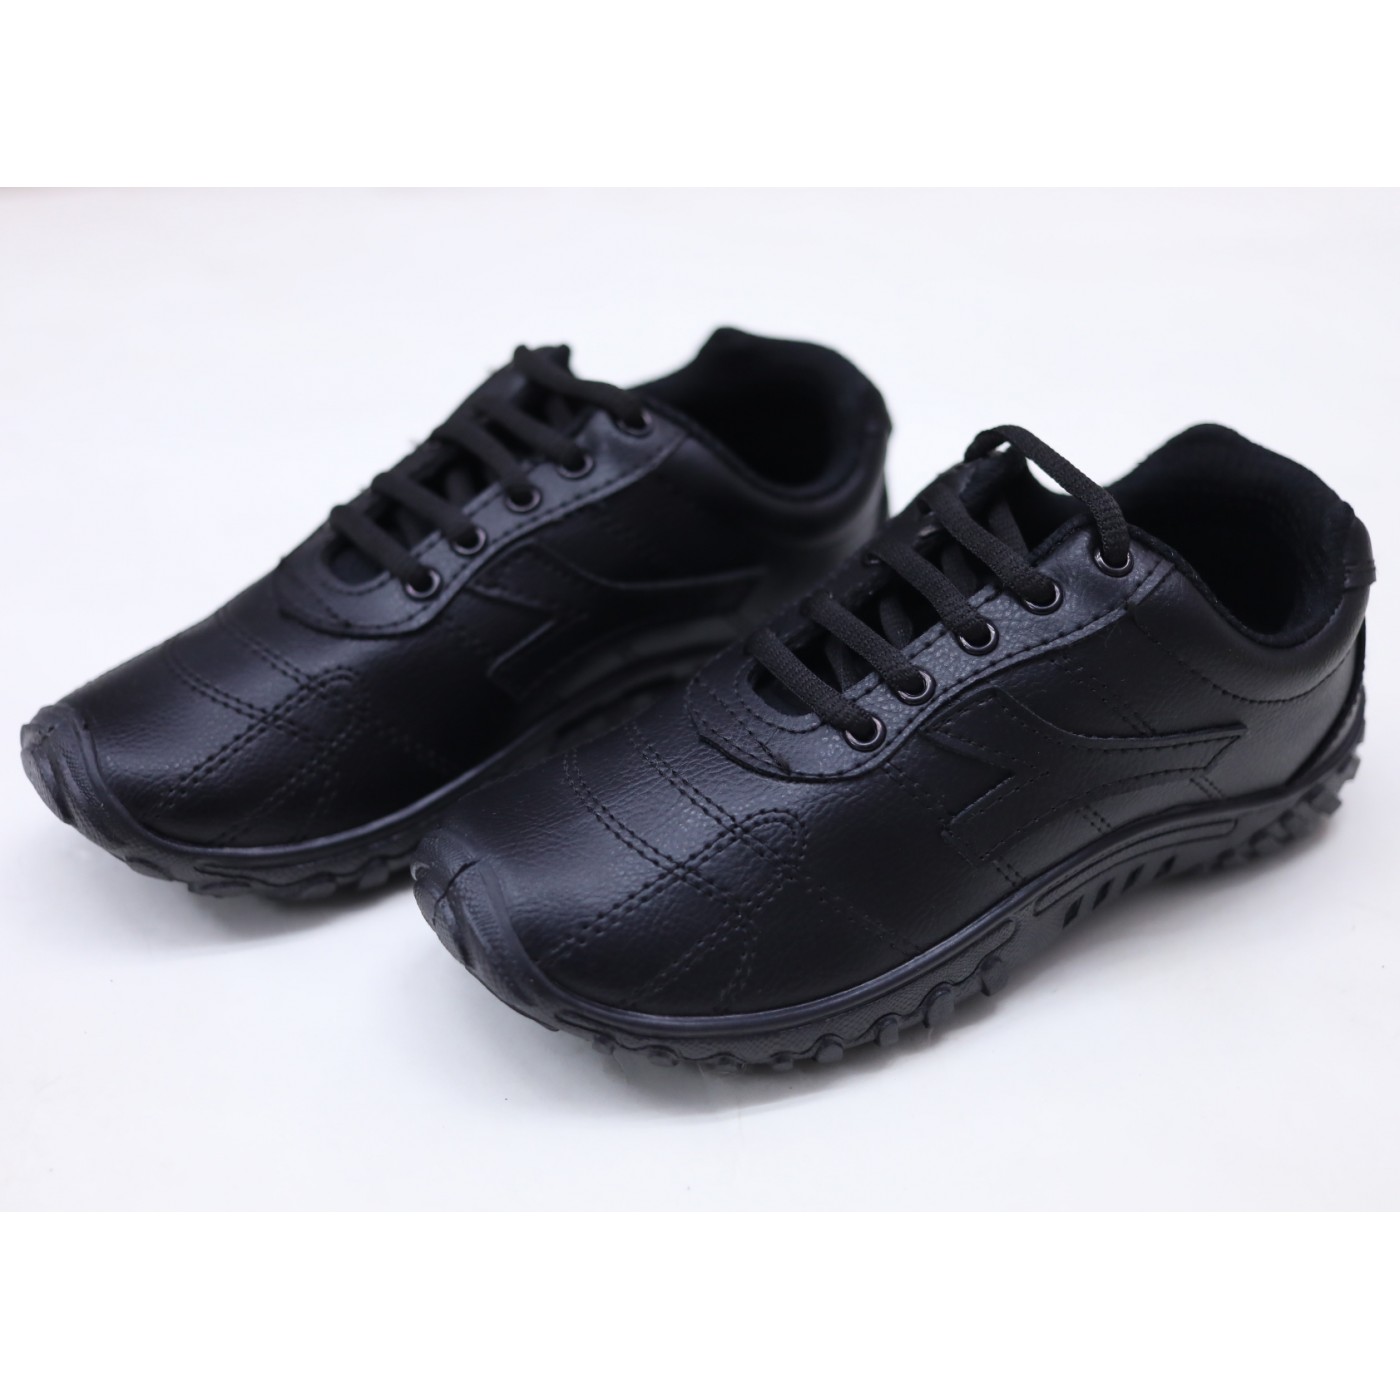 Black Rex Glamour Shoes - Corporate Uniform Suppliers | School Uniform  Suppliers in Delhi